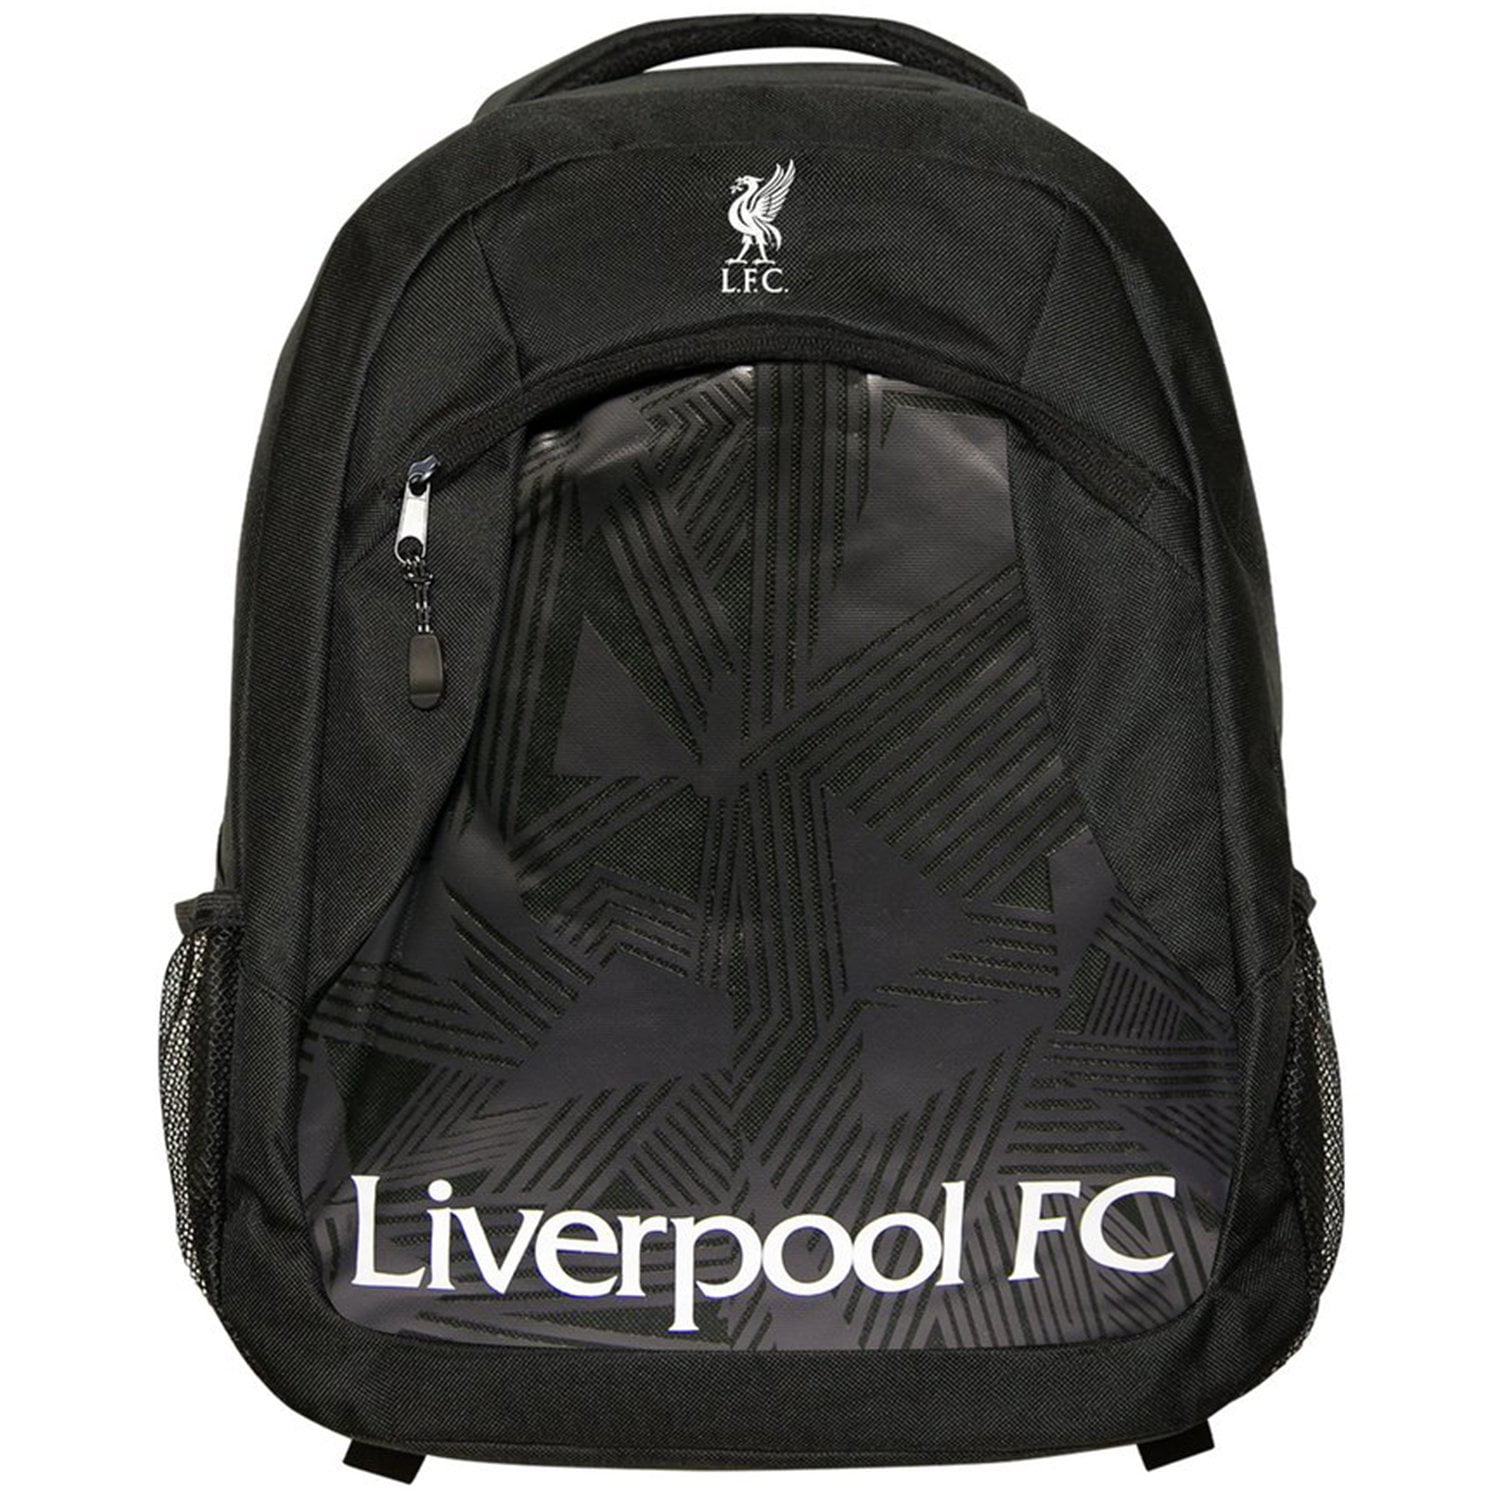 Kids Football City League Messenger Bag Boys Girls School World Cup Shoulder Bag Liverpool 